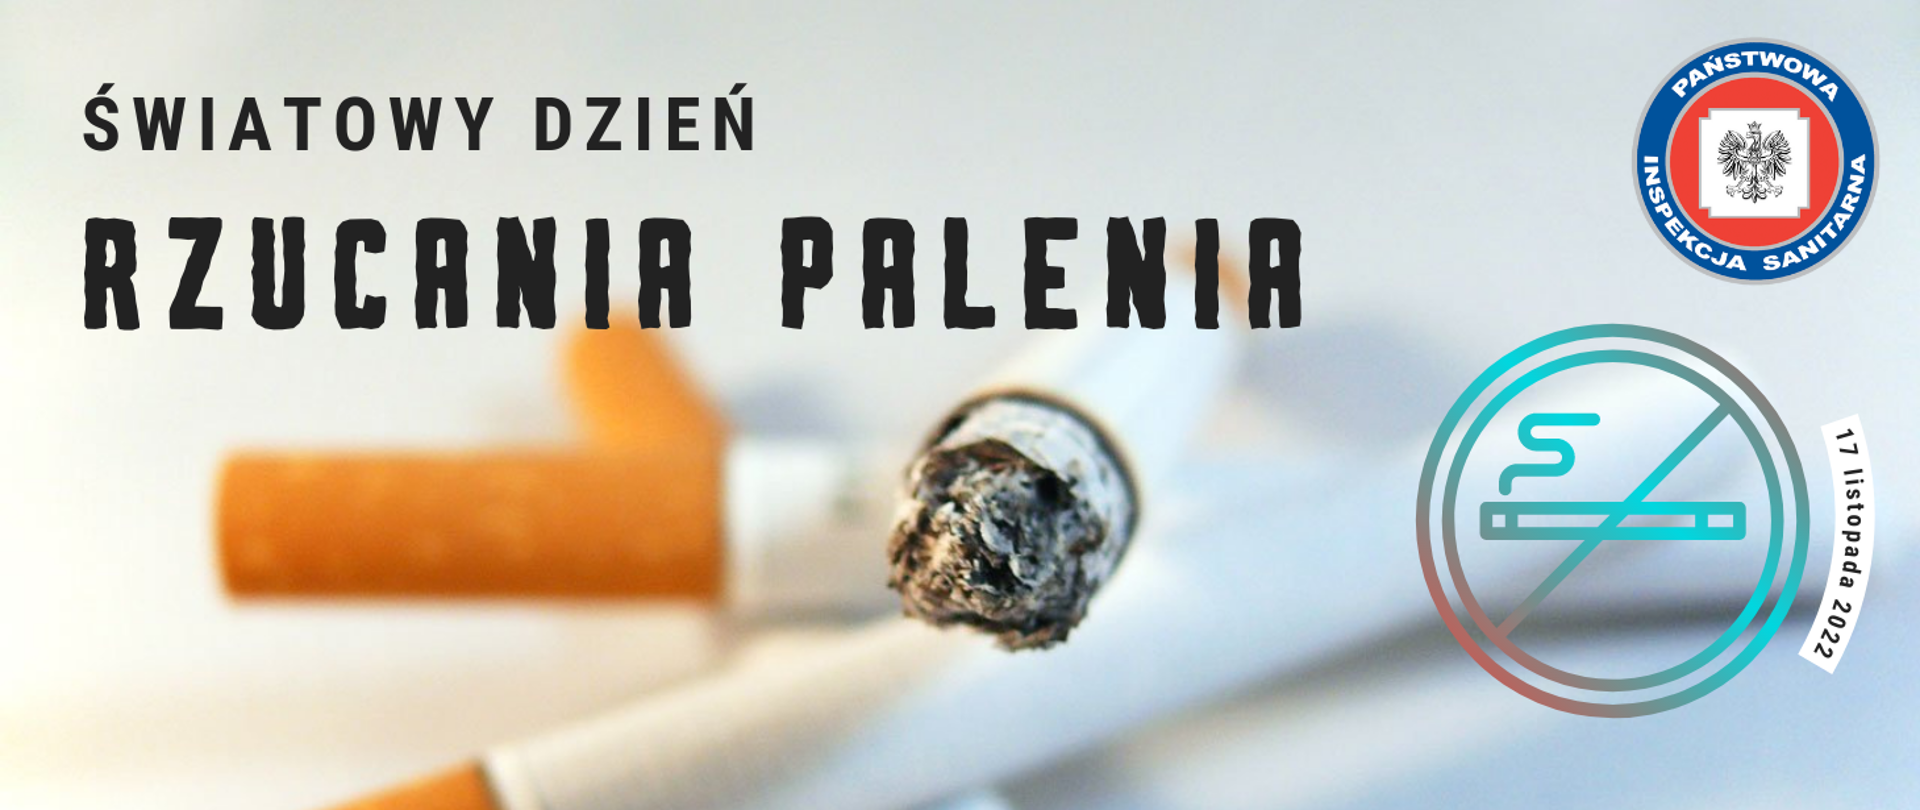 Światowy Dzień Rzucania Palenia 17 listopada 2022. W tle zdjęcie papierosów. W prawym górnym rogu logo PIS.